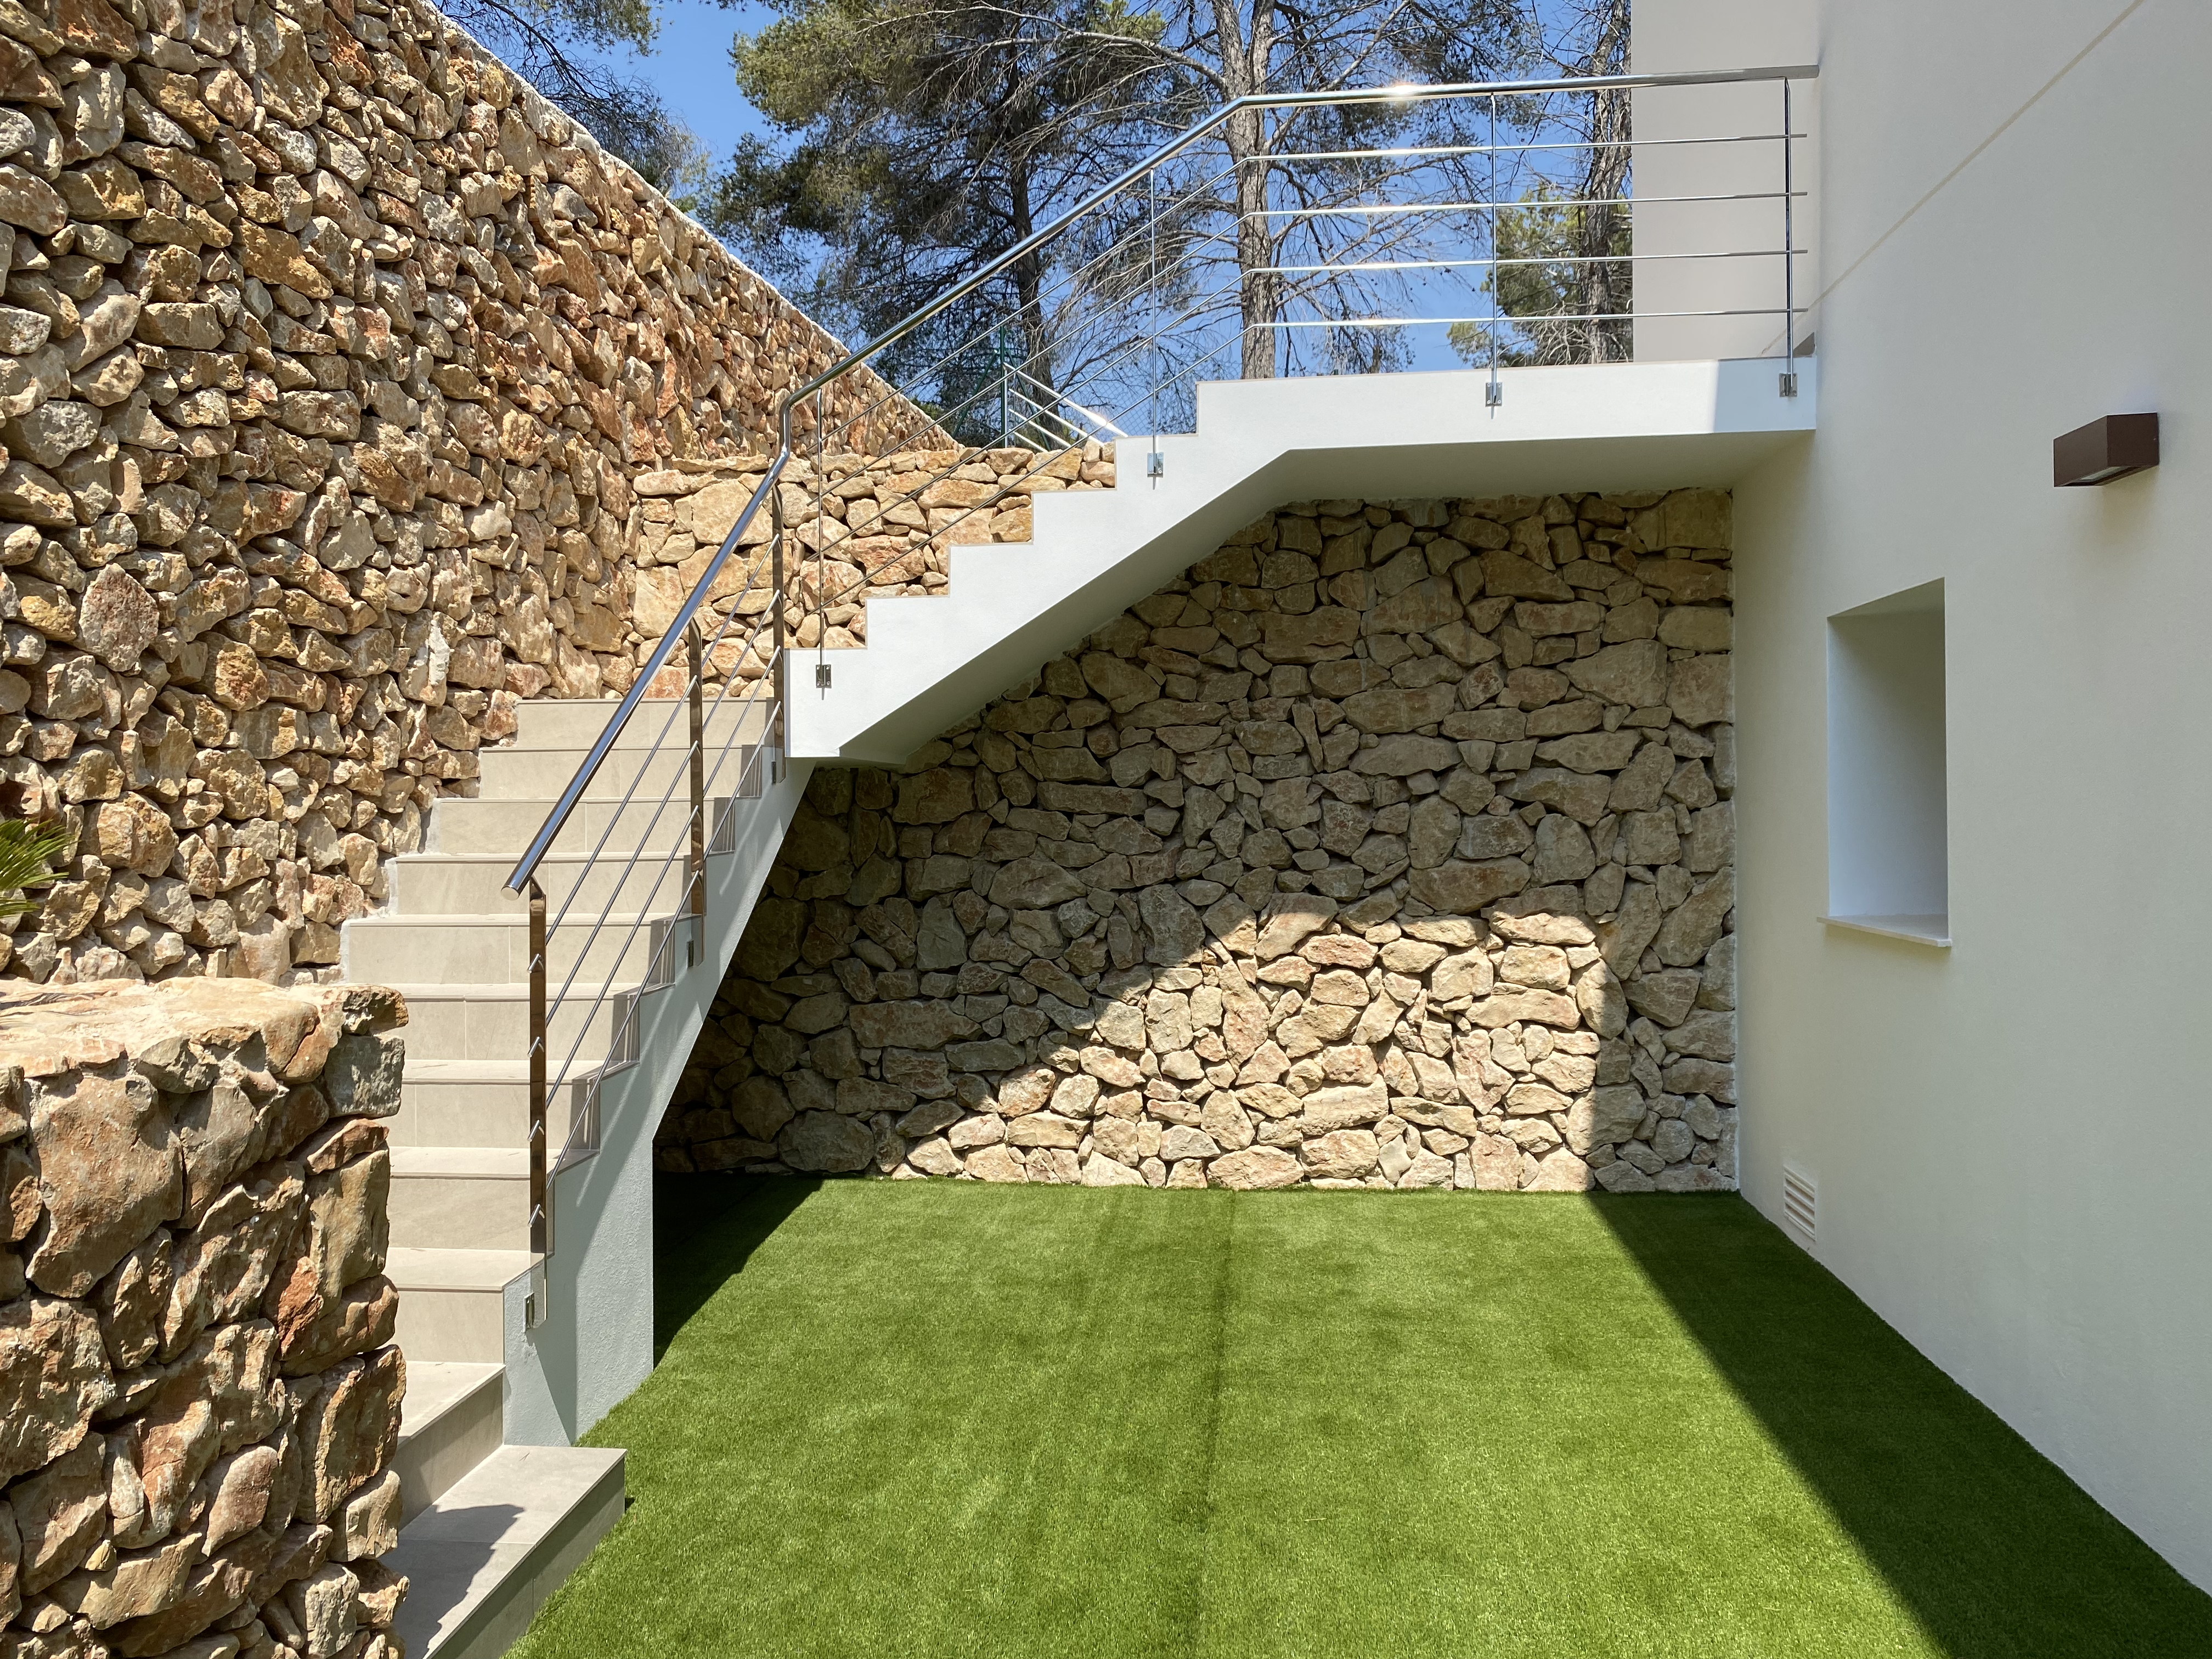 Geweldige moderne Ibiza-stijl villa klaar om in te trekken. El Portet